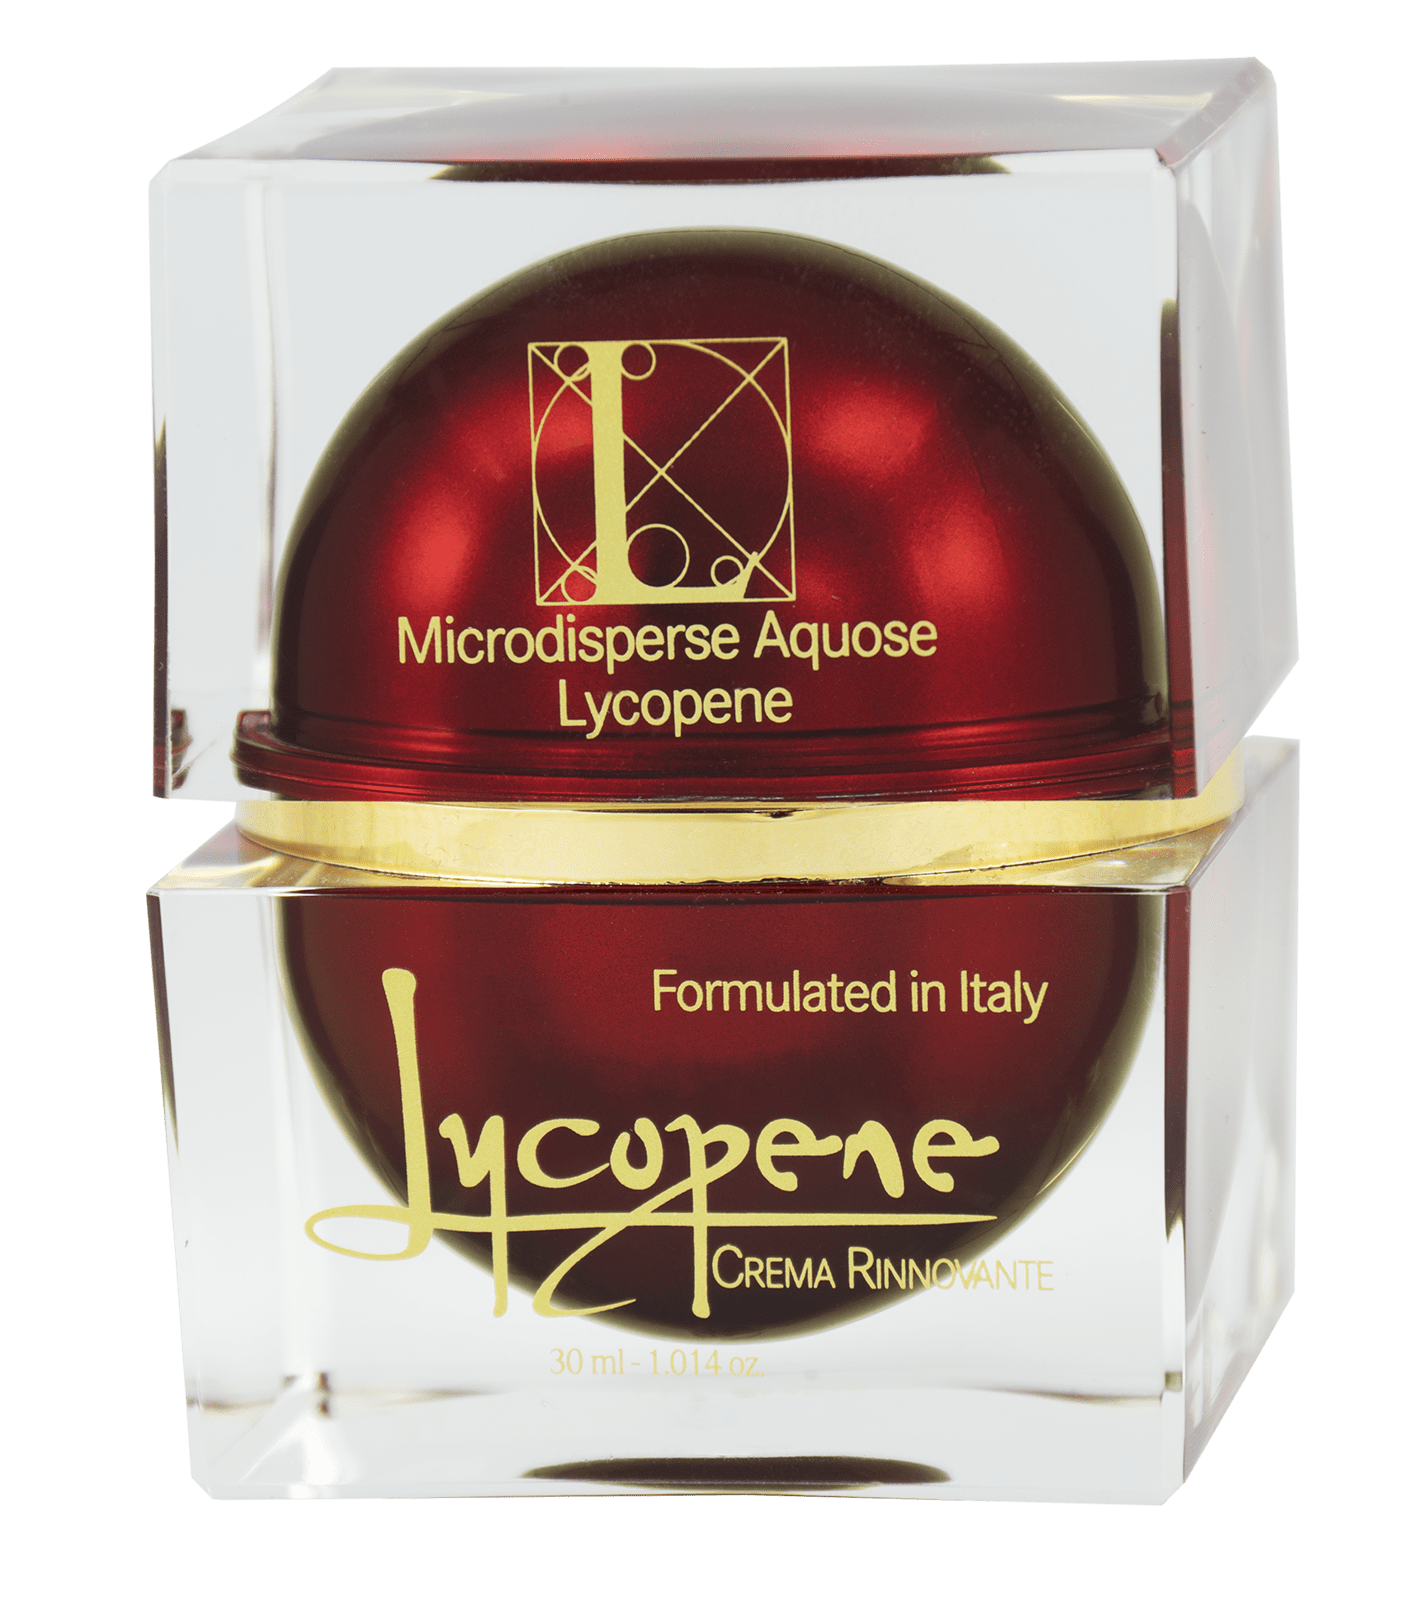 Set of 3 Products The Basic Lycopene Based Products